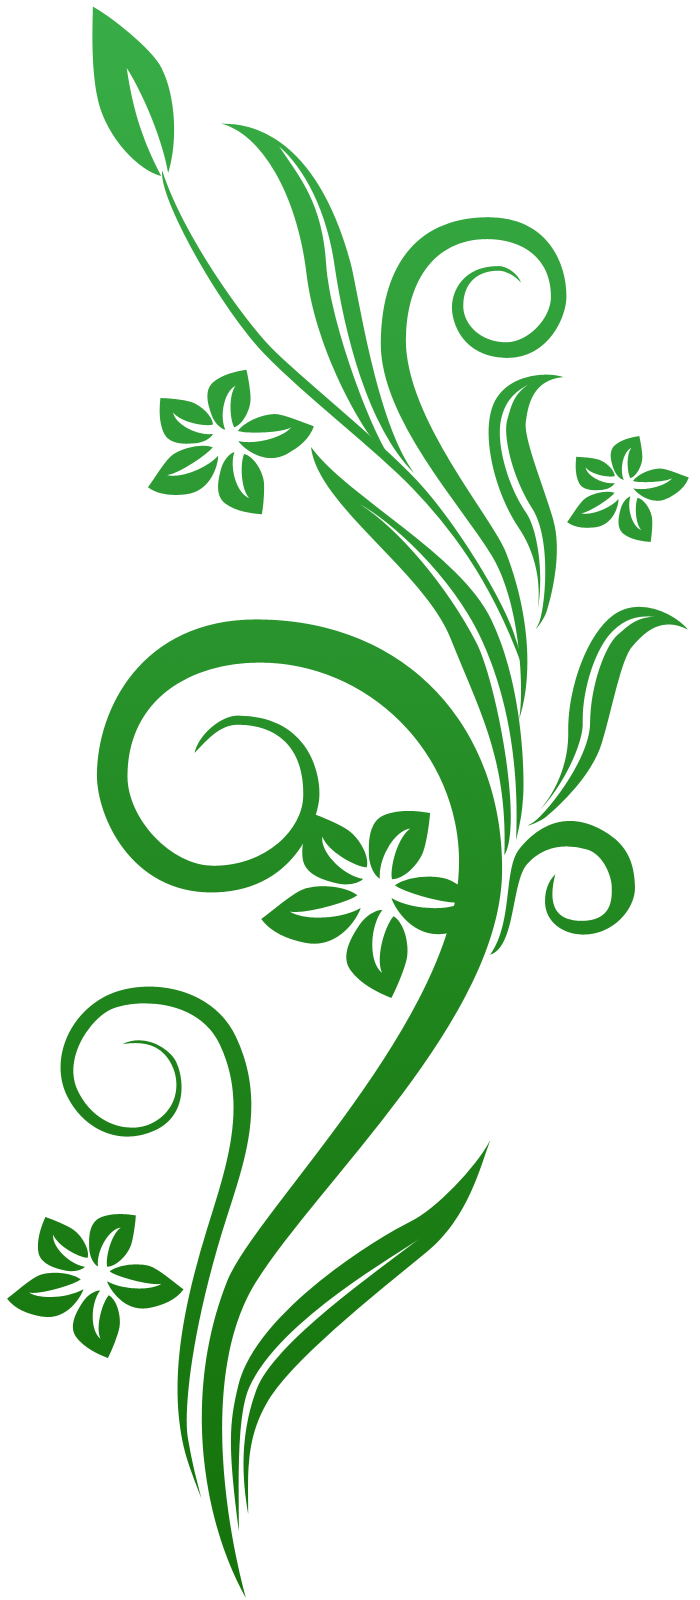 Green Flower Swirls